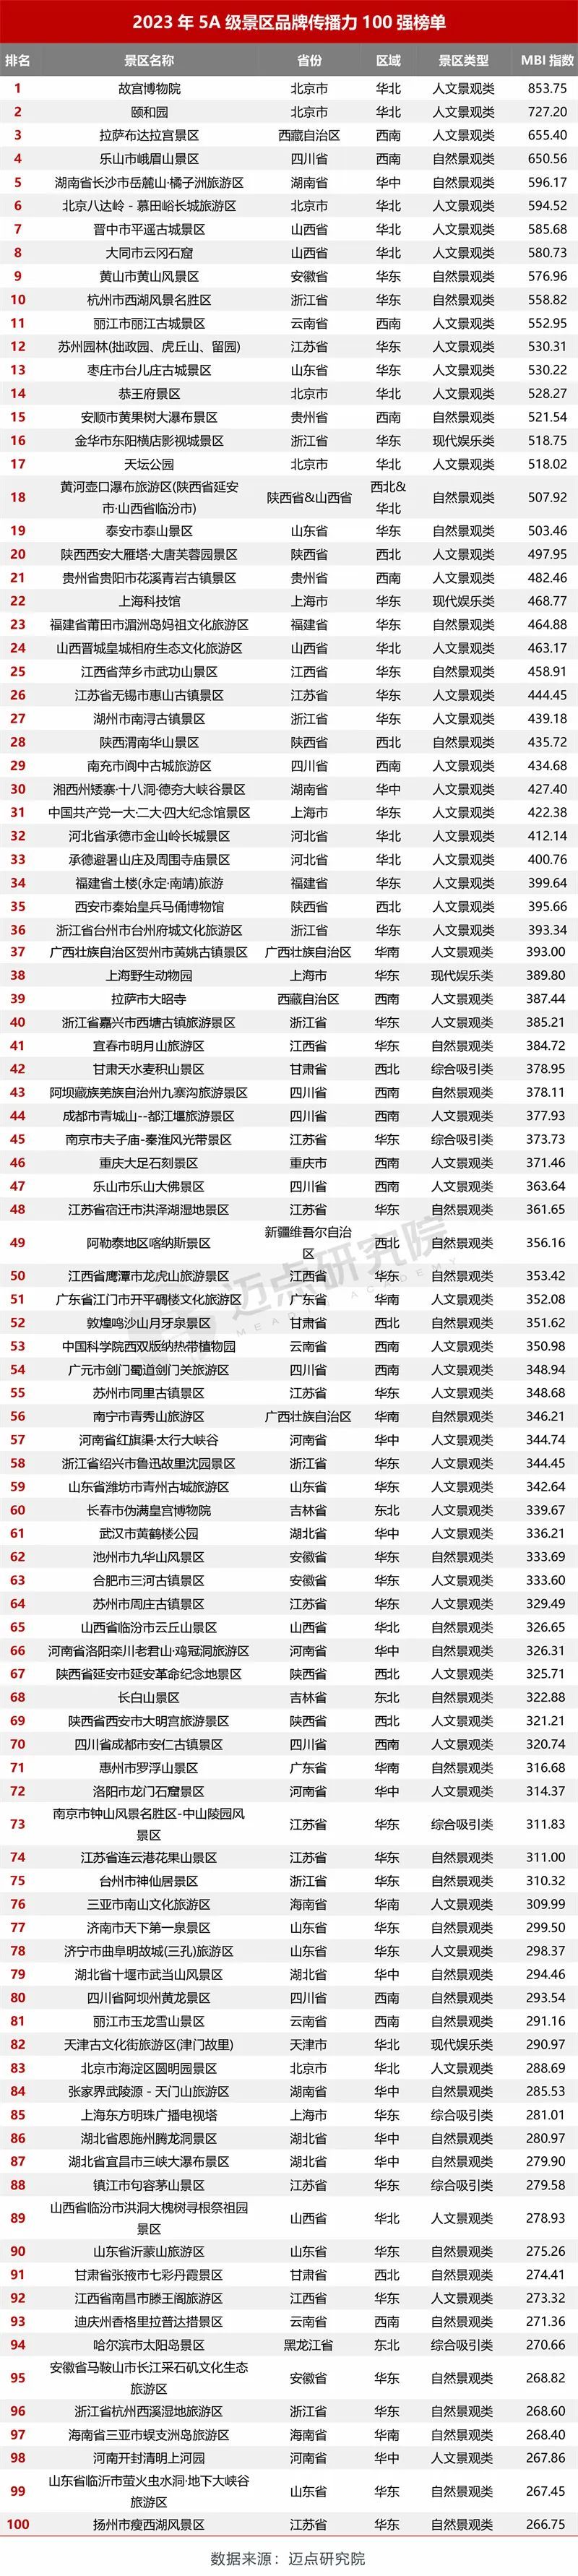 丽江古城、玉龙雪山上榜2023年5A级景区品牌传播力100强榜单！.jpeg